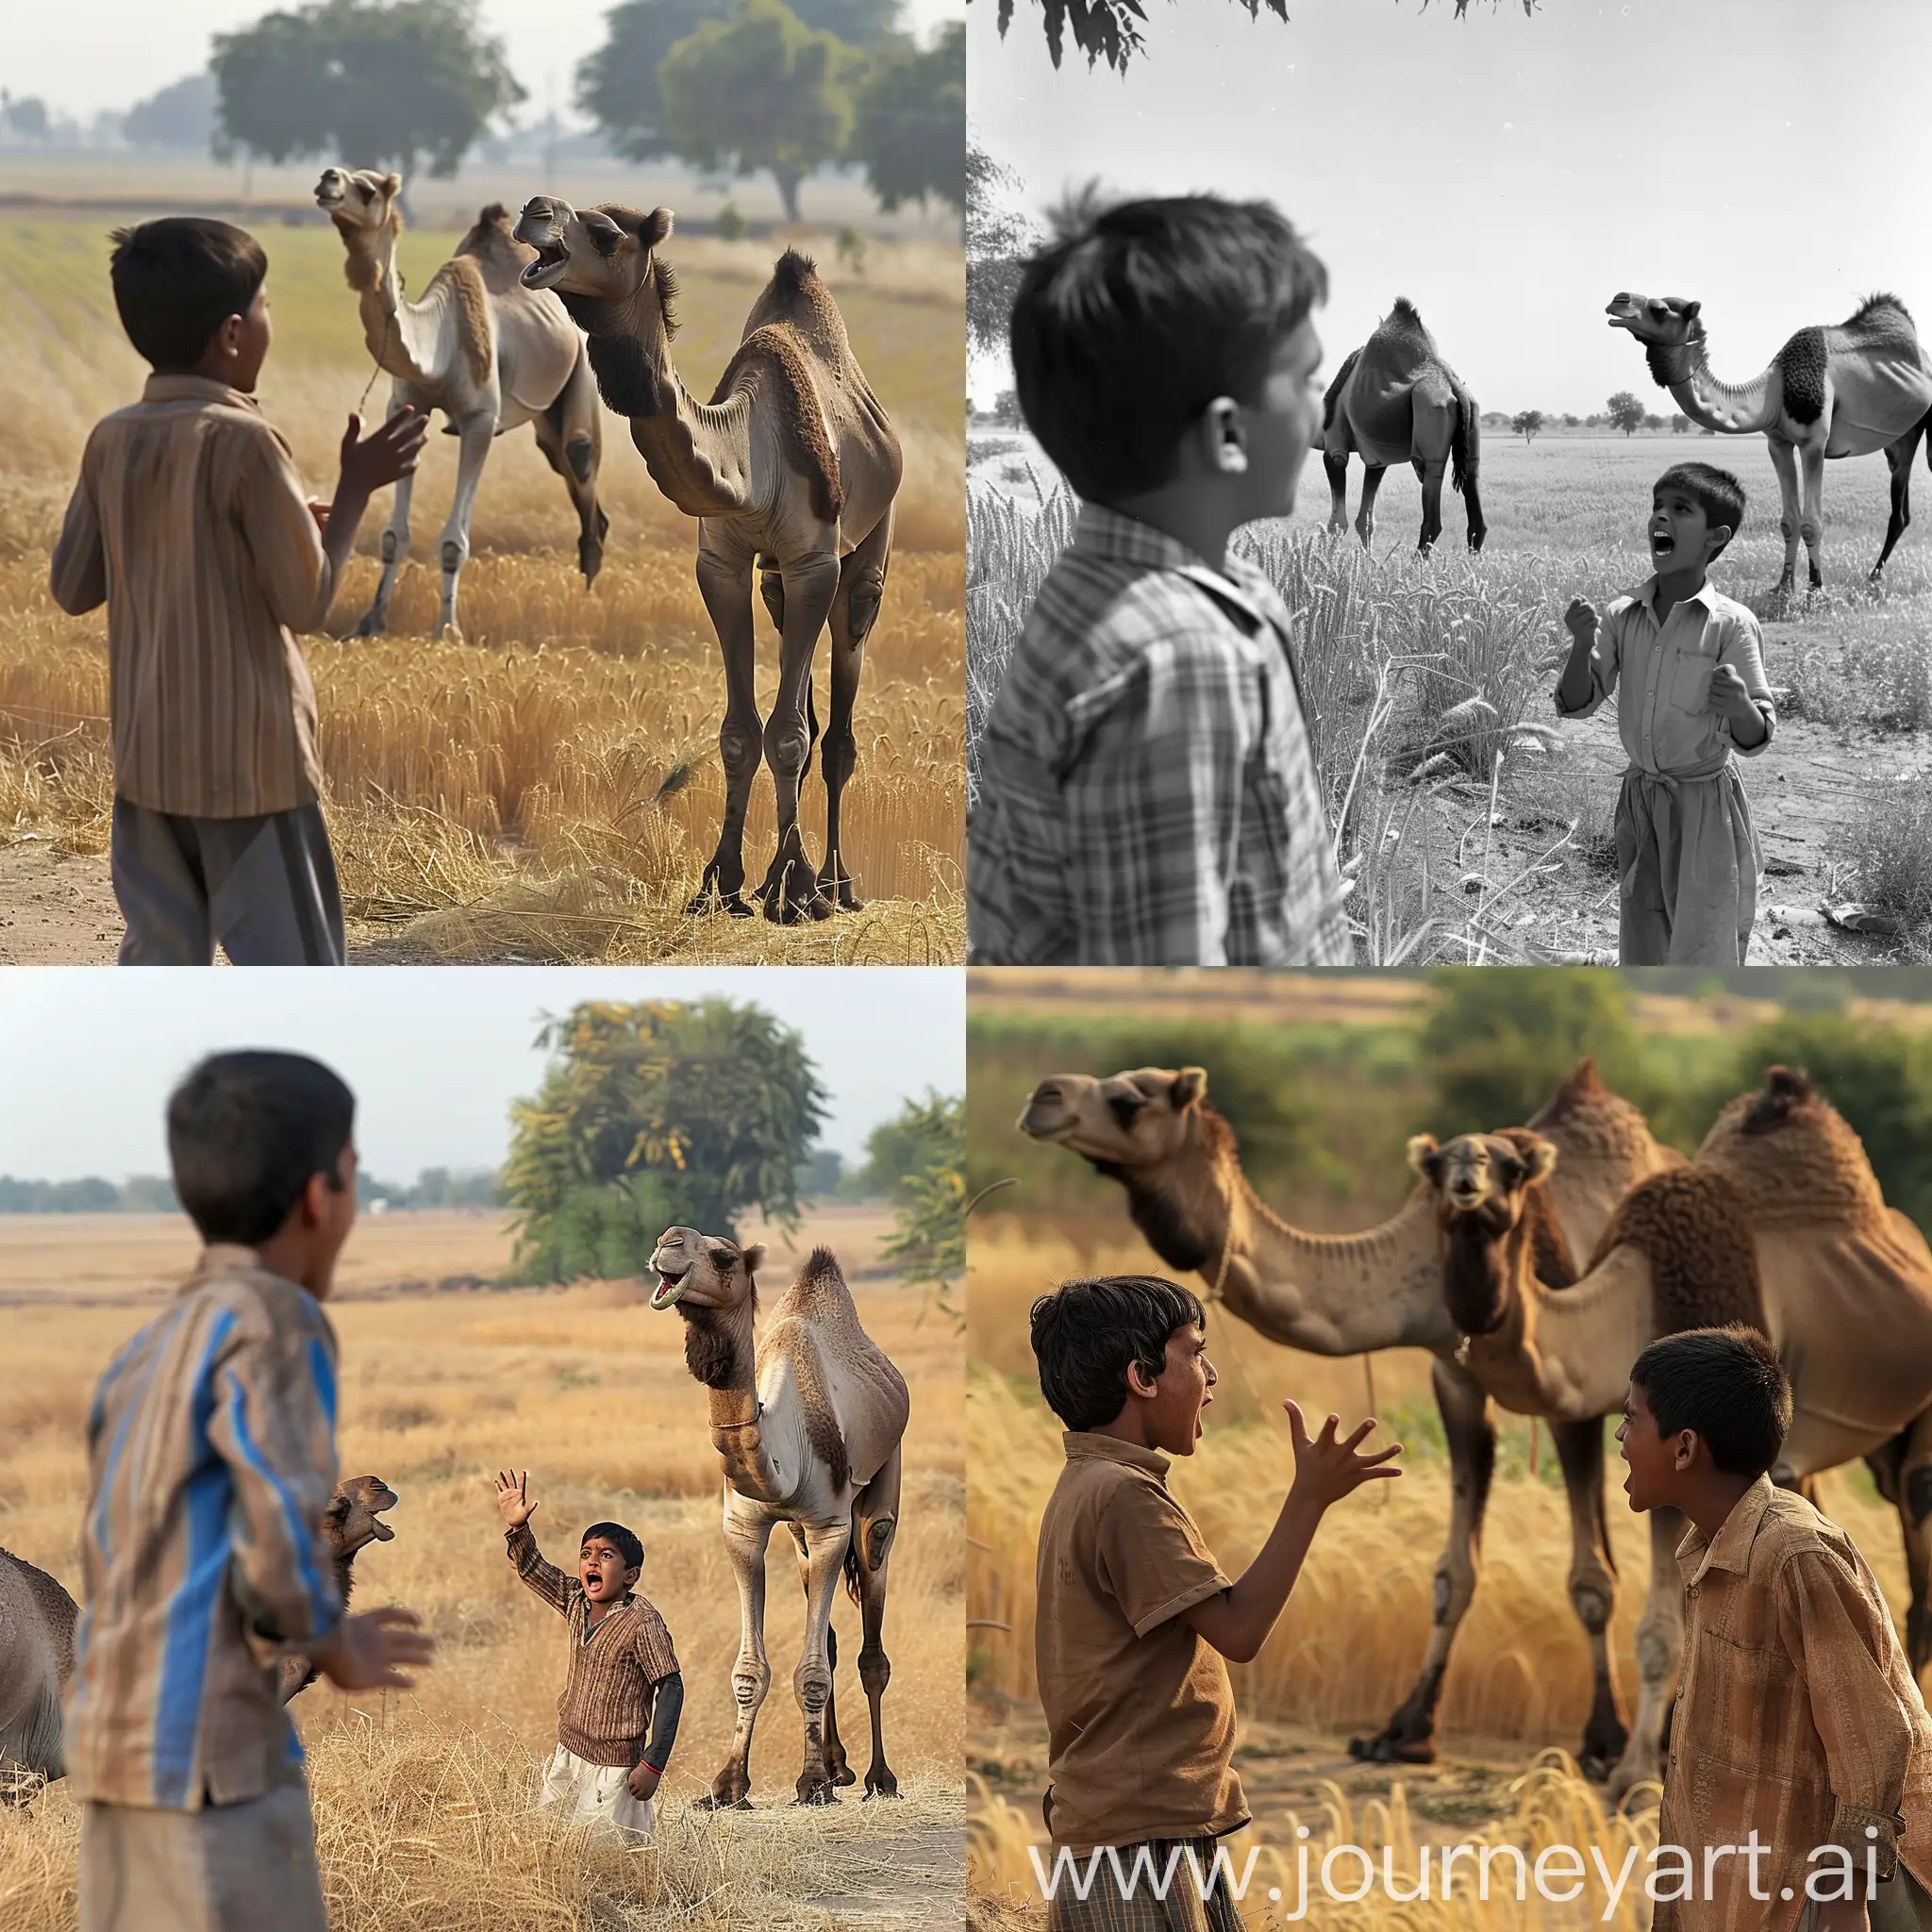 Rural-Scene-Spirited-Exchange-Between-Indian-Youth-and-Marwari-Camelherd